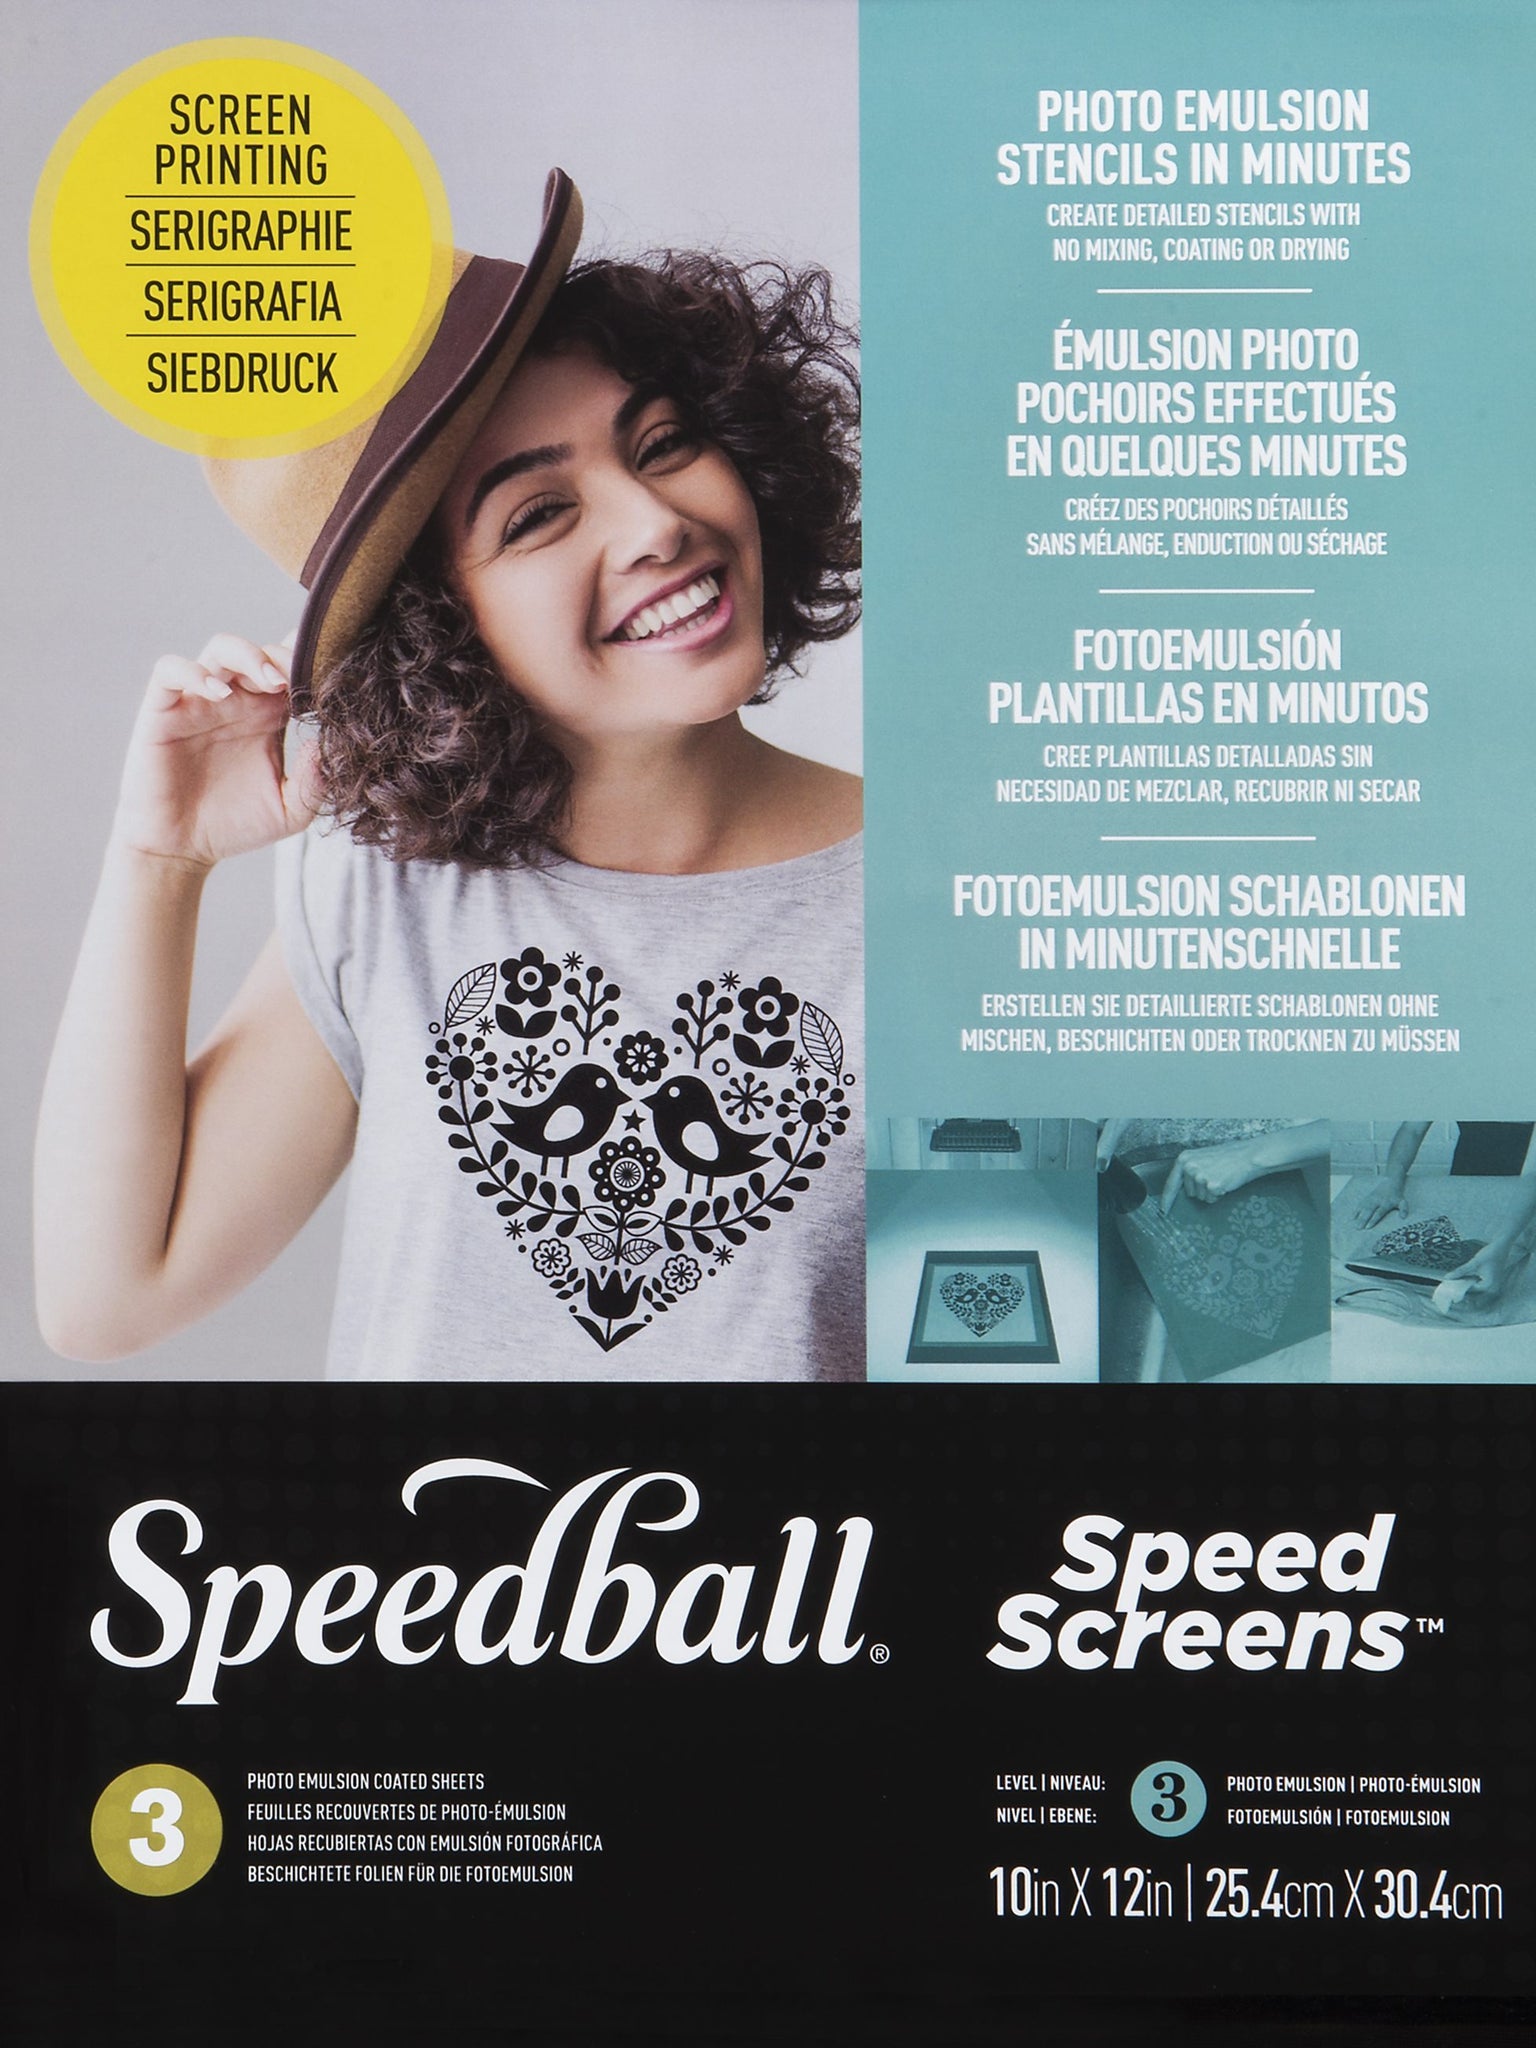 Wooden Screen Printing Frames - Speedball Art